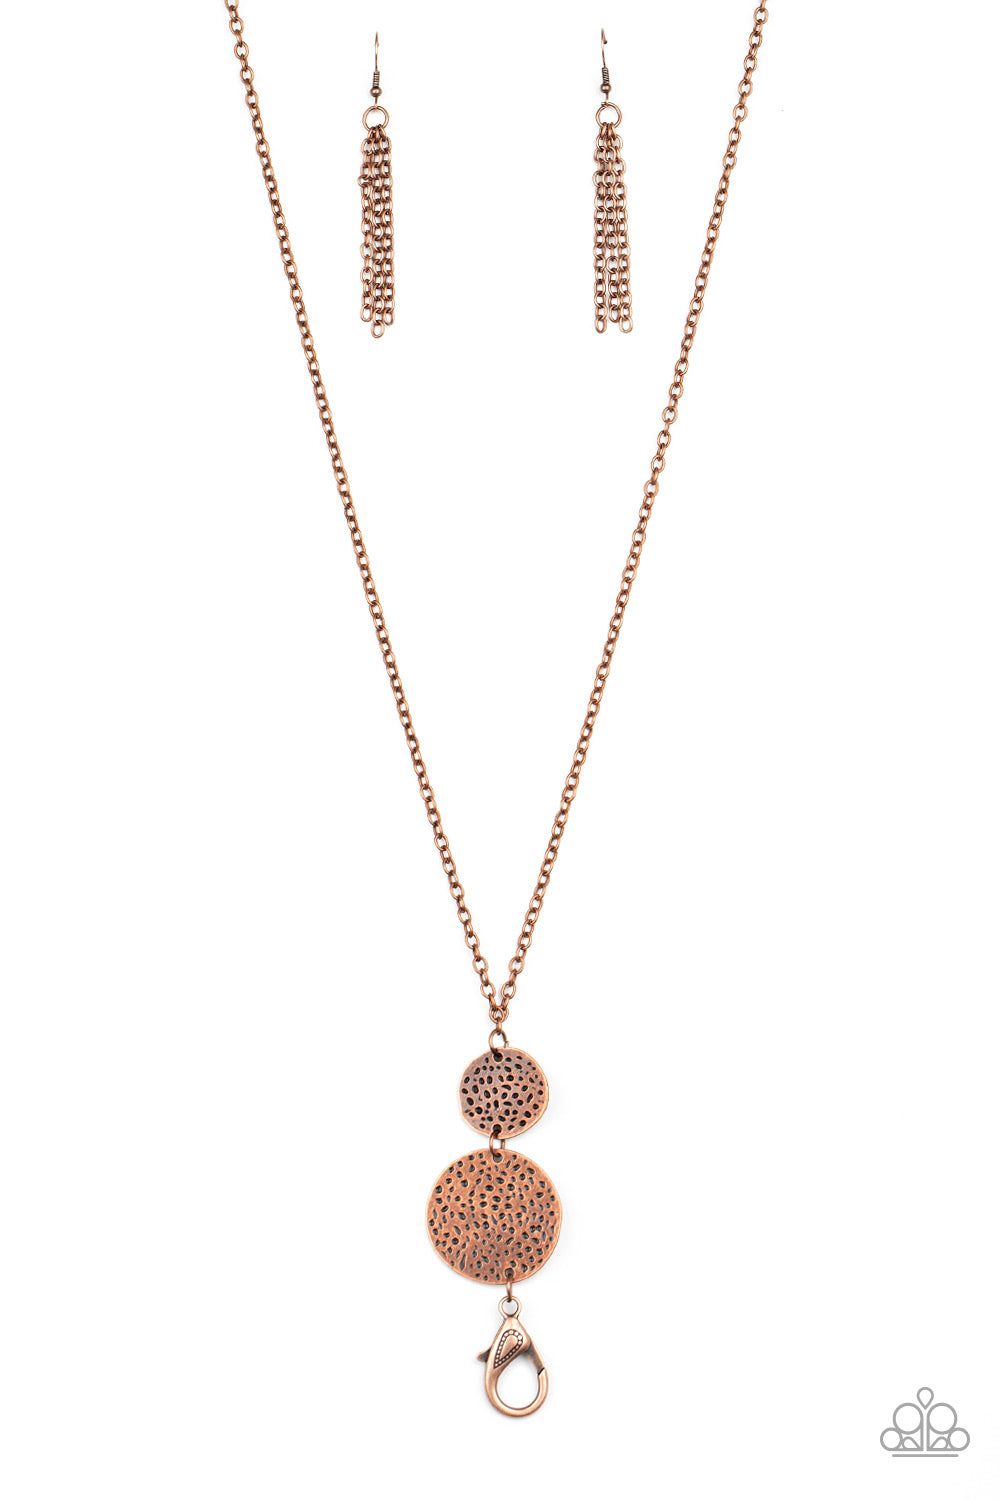 Shoulder To Shoulder - Copper Lanyard Necklace Set